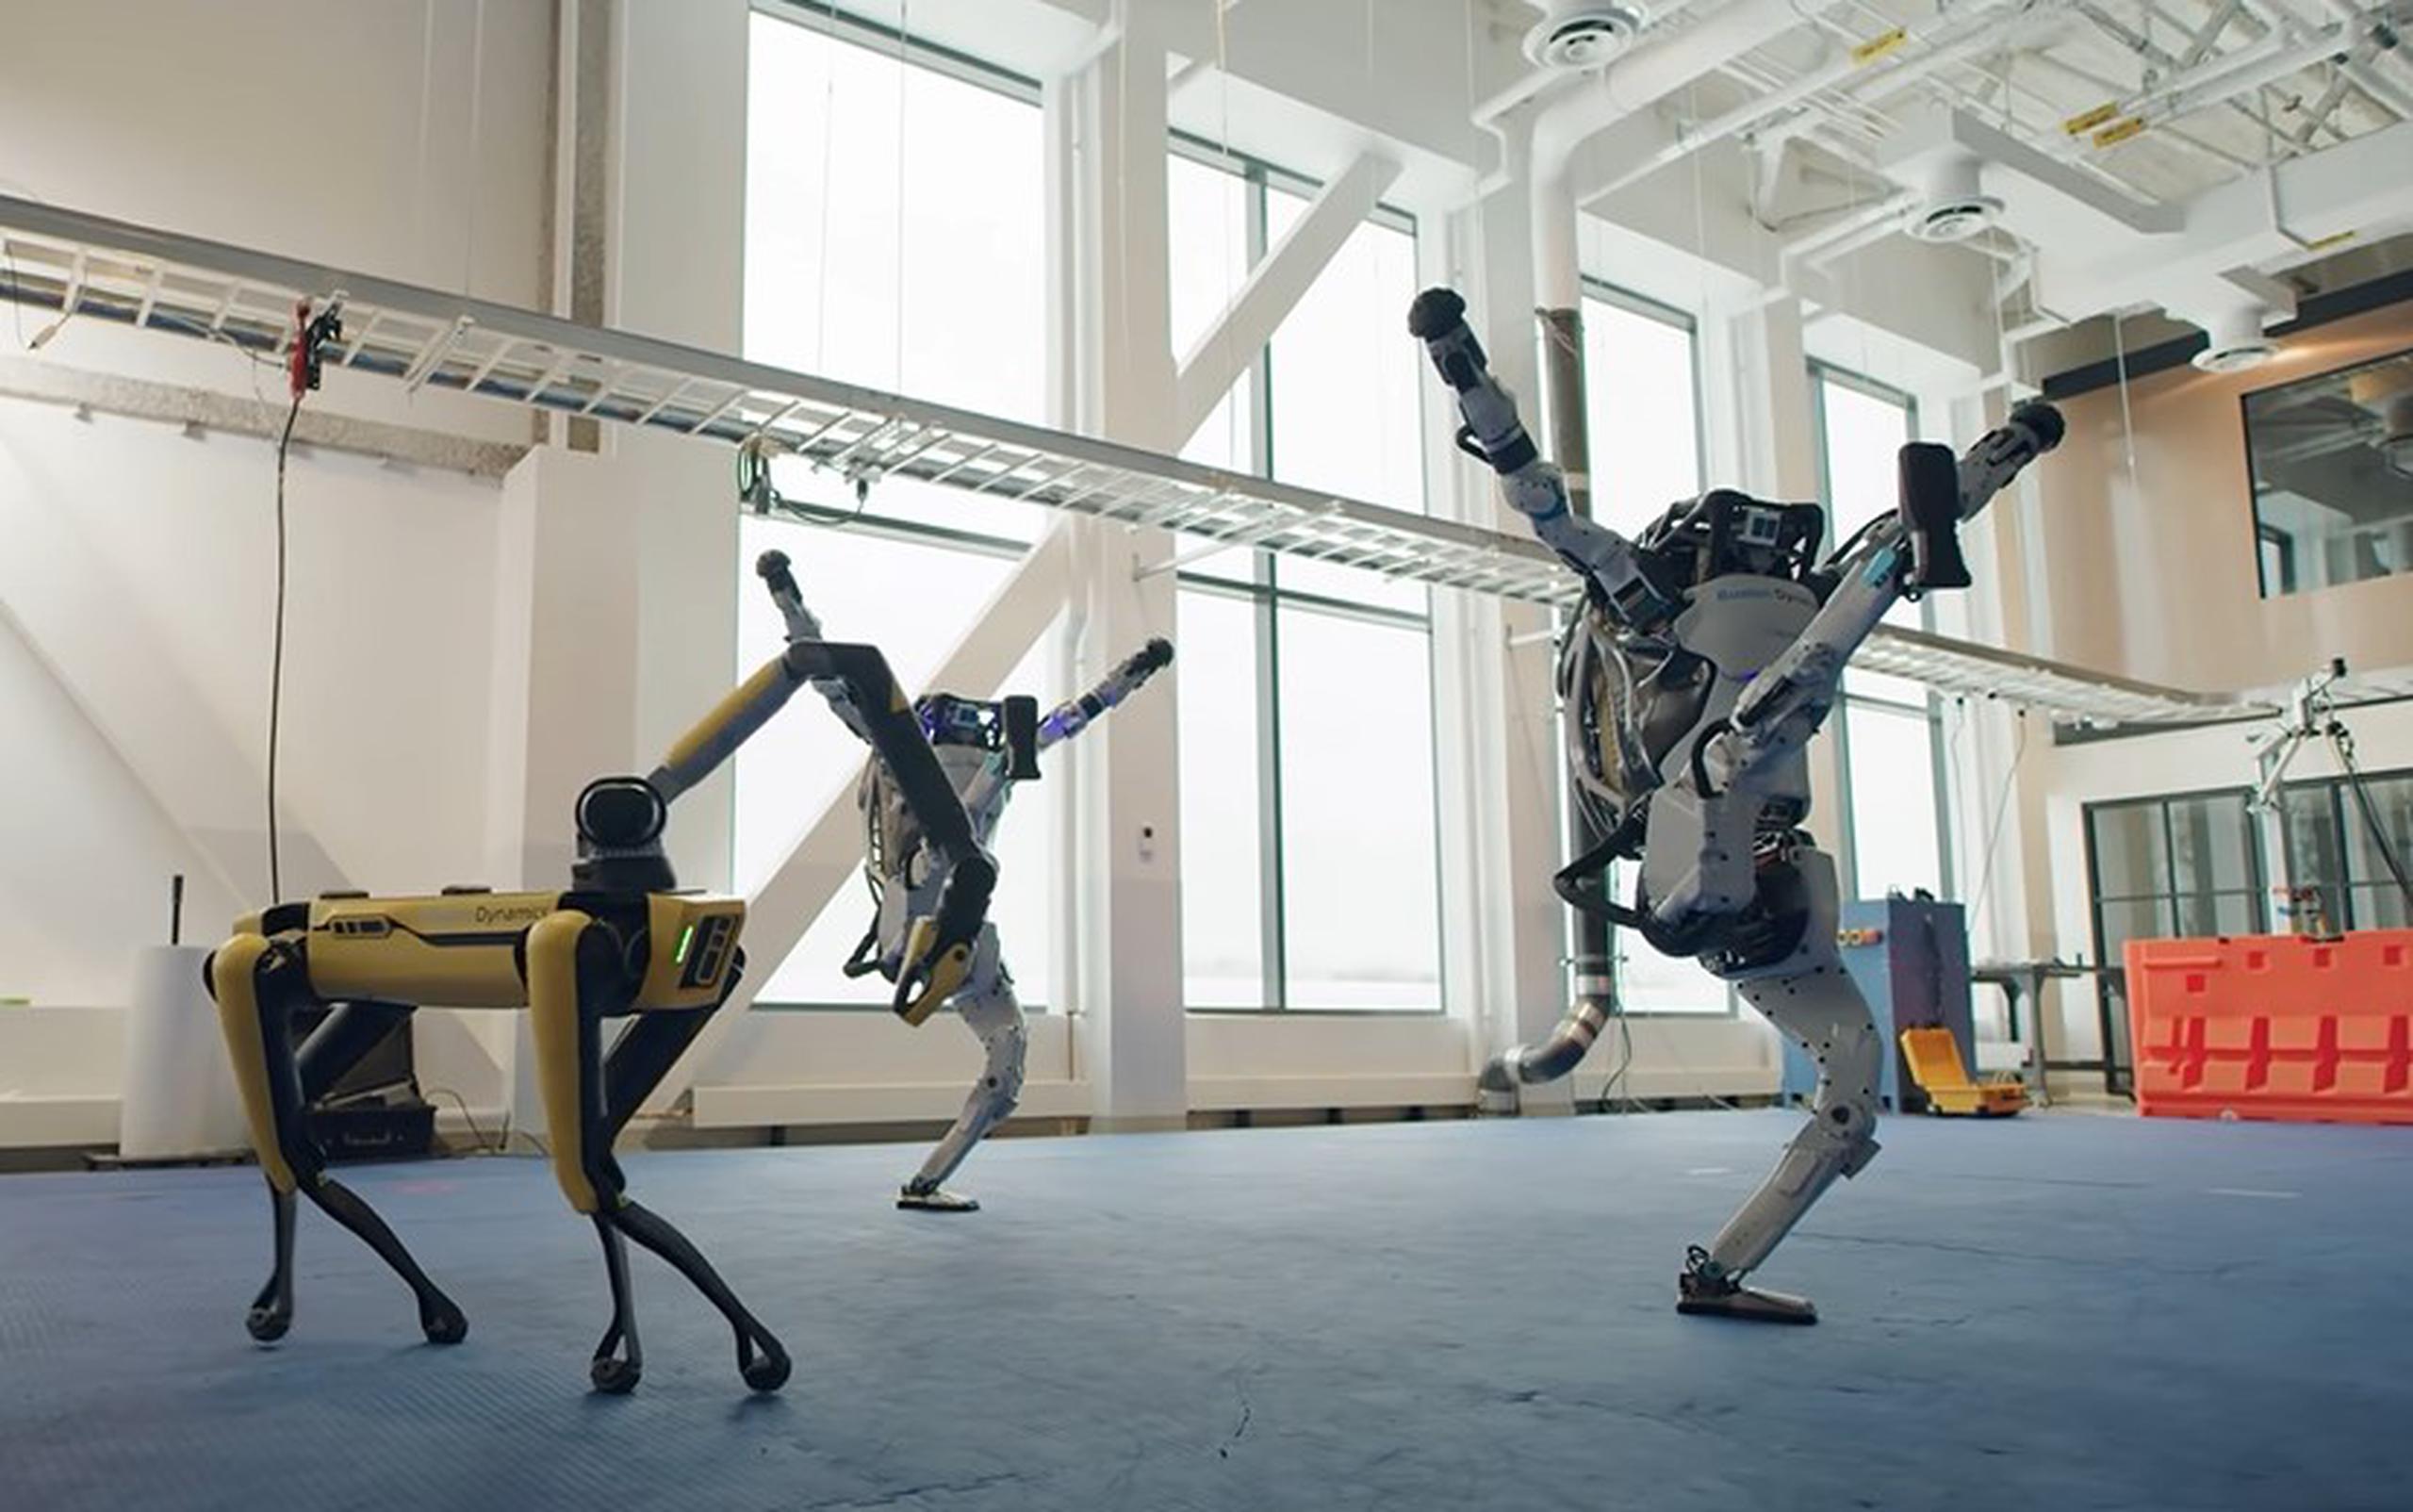 “Todo nuestro equipo se reunió para celebrar el comienzo de lo que esperamos sea un año más feliz”, expresó la compañía Boston Dynamics.